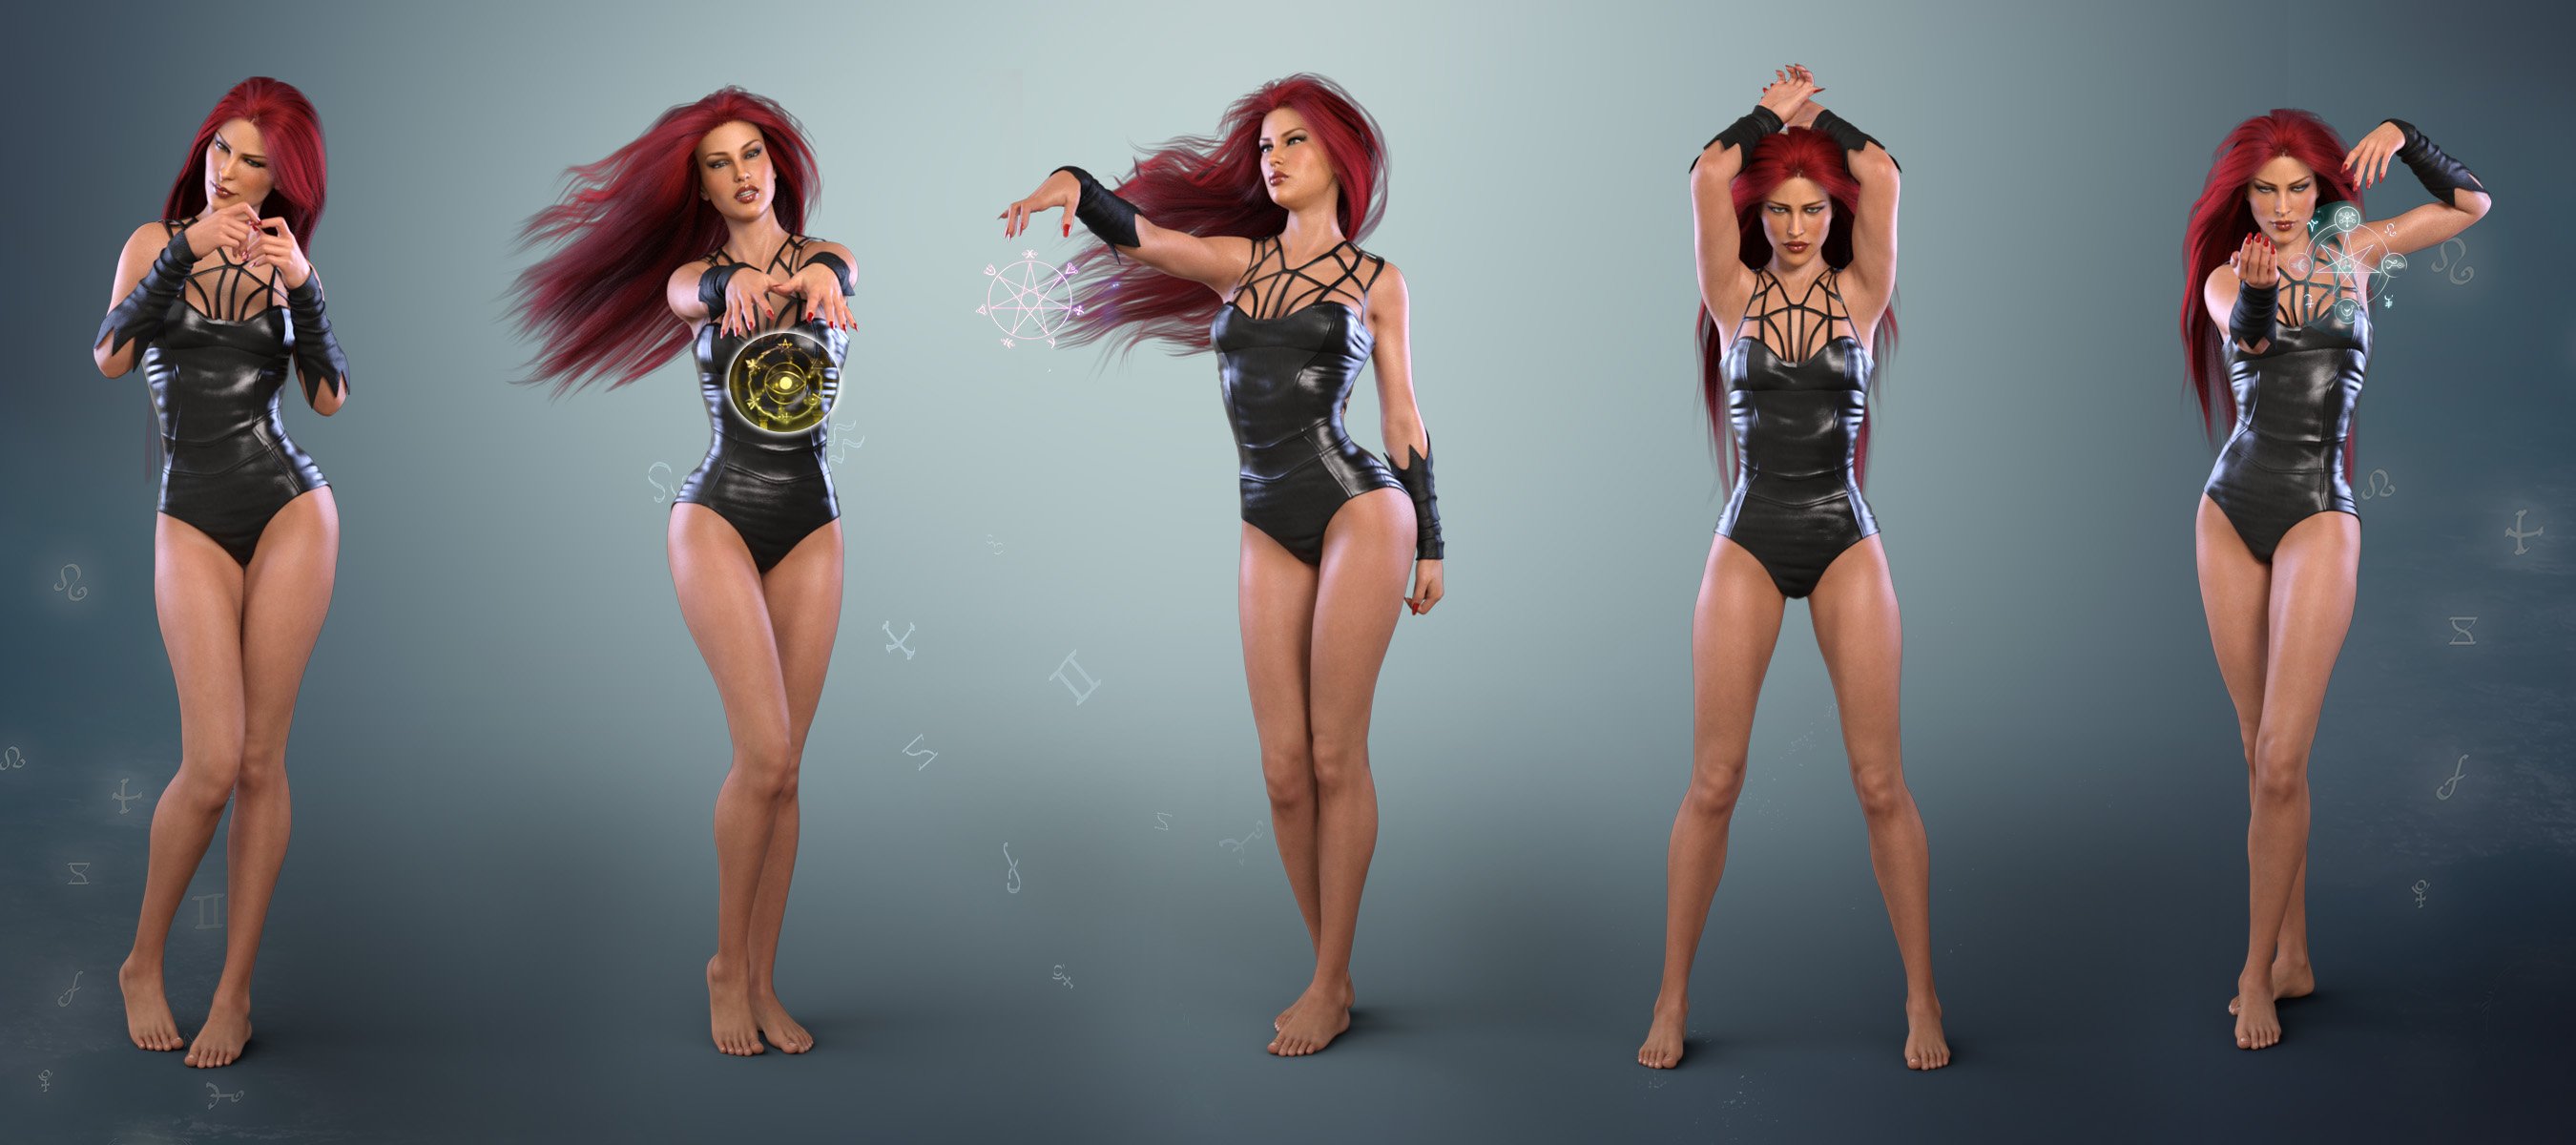 Z Femme Mystique - Poses for Genesis 3 & 8 Female by: Zeddicuss, 3D Models by Daz 3D